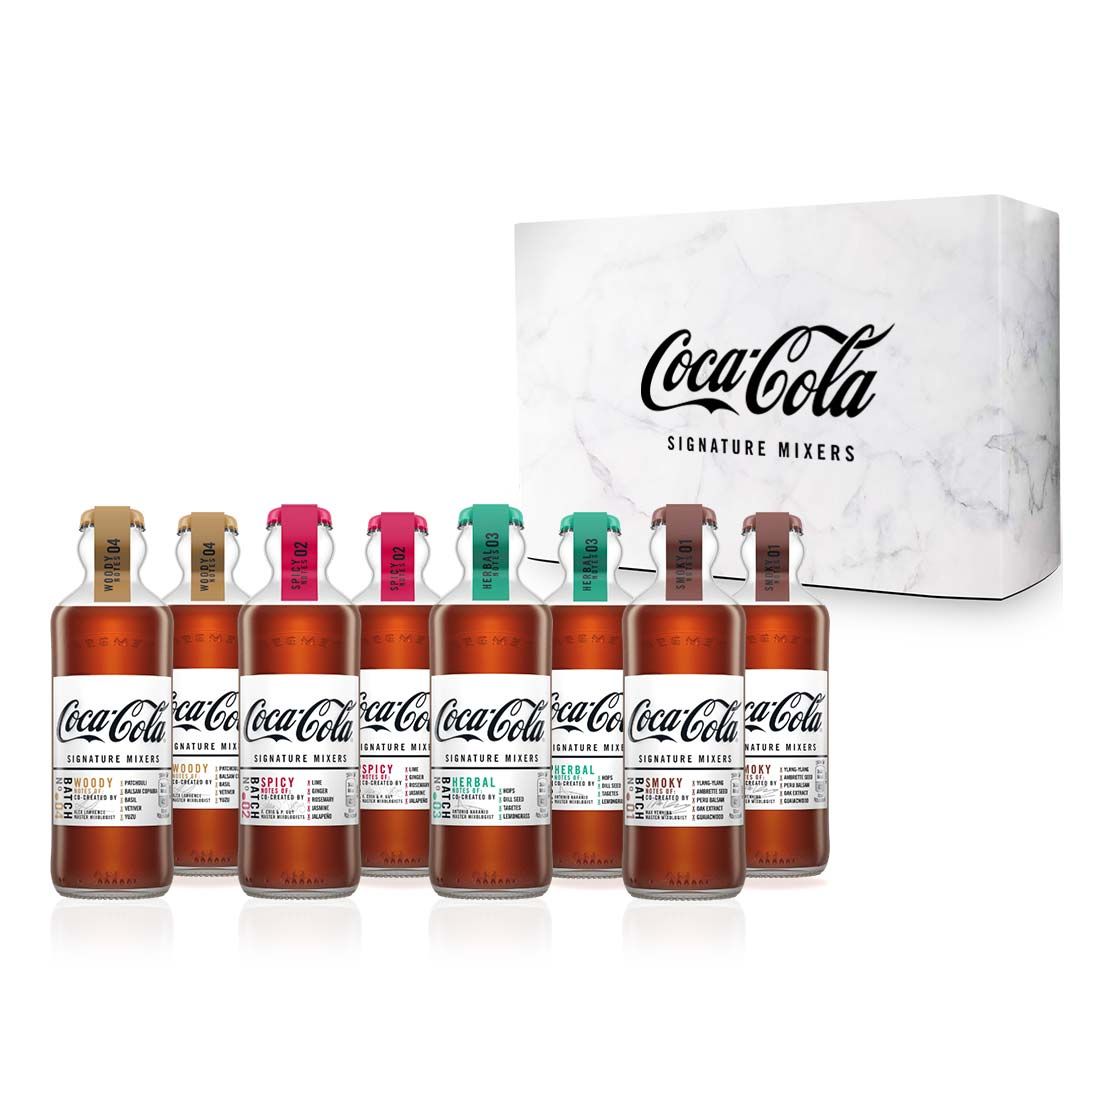 The Coca-Cola Signature Mixers Set